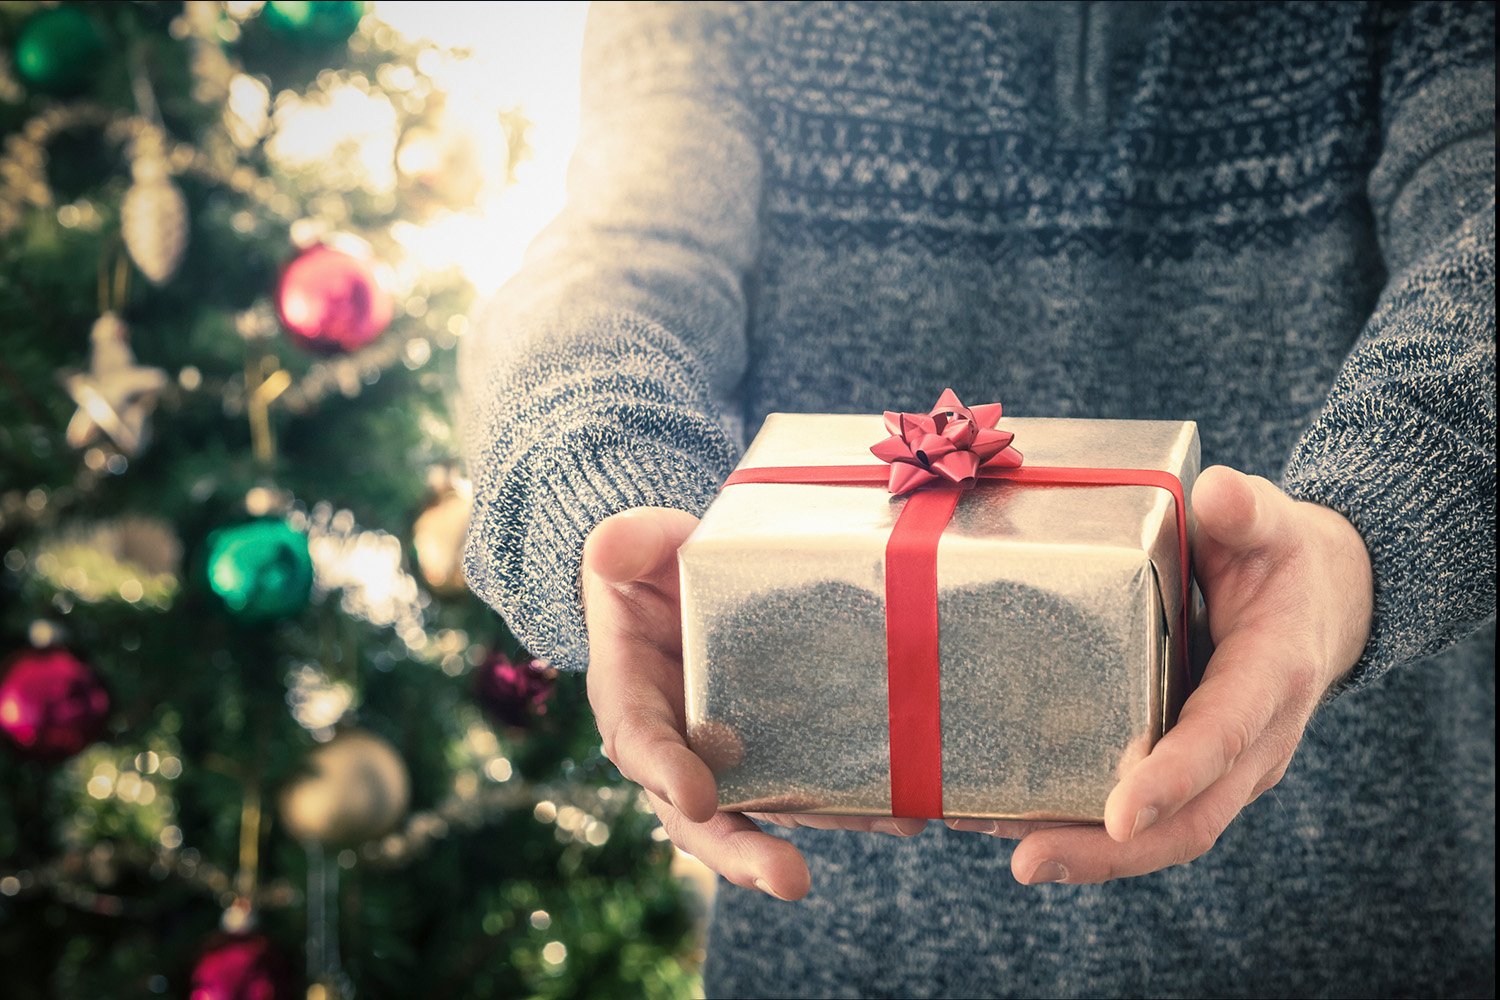 El 61% de los españoles dice que un regalo de segunda mano le hace la misma ilusión que uno nuevo